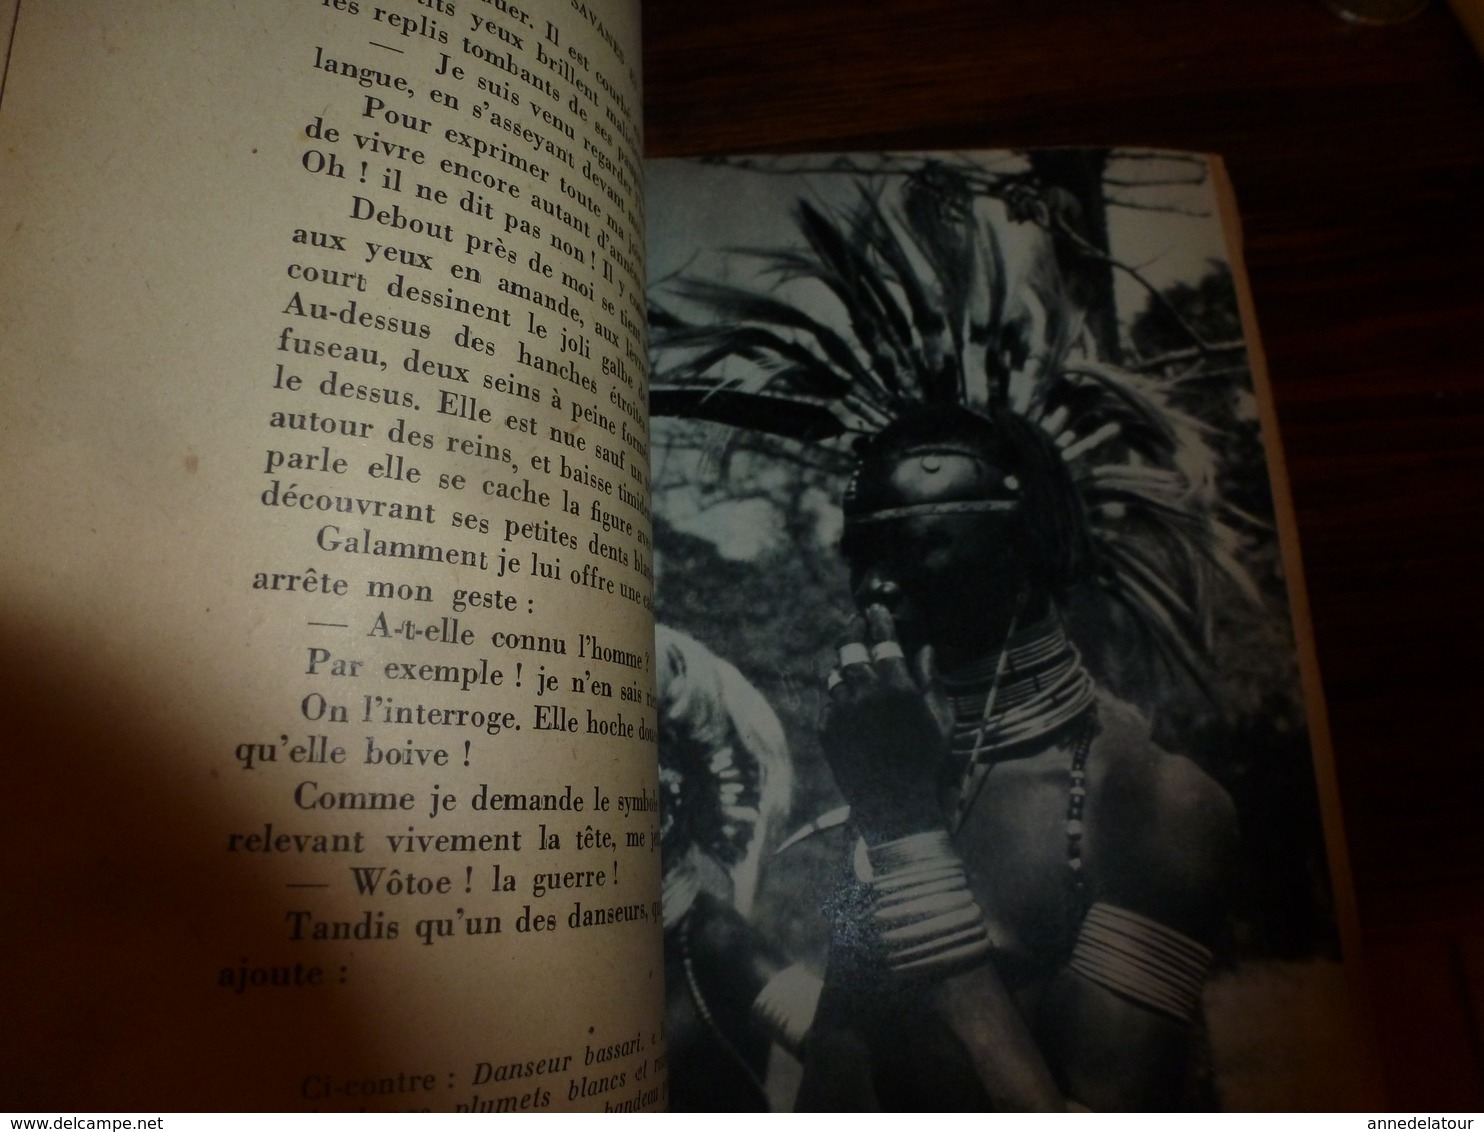 1944 SAVANES et FORÊTS par Jacques Soubrier (belles photographies nues de l'Afrique Noire, etc) Livre dédicacé à André